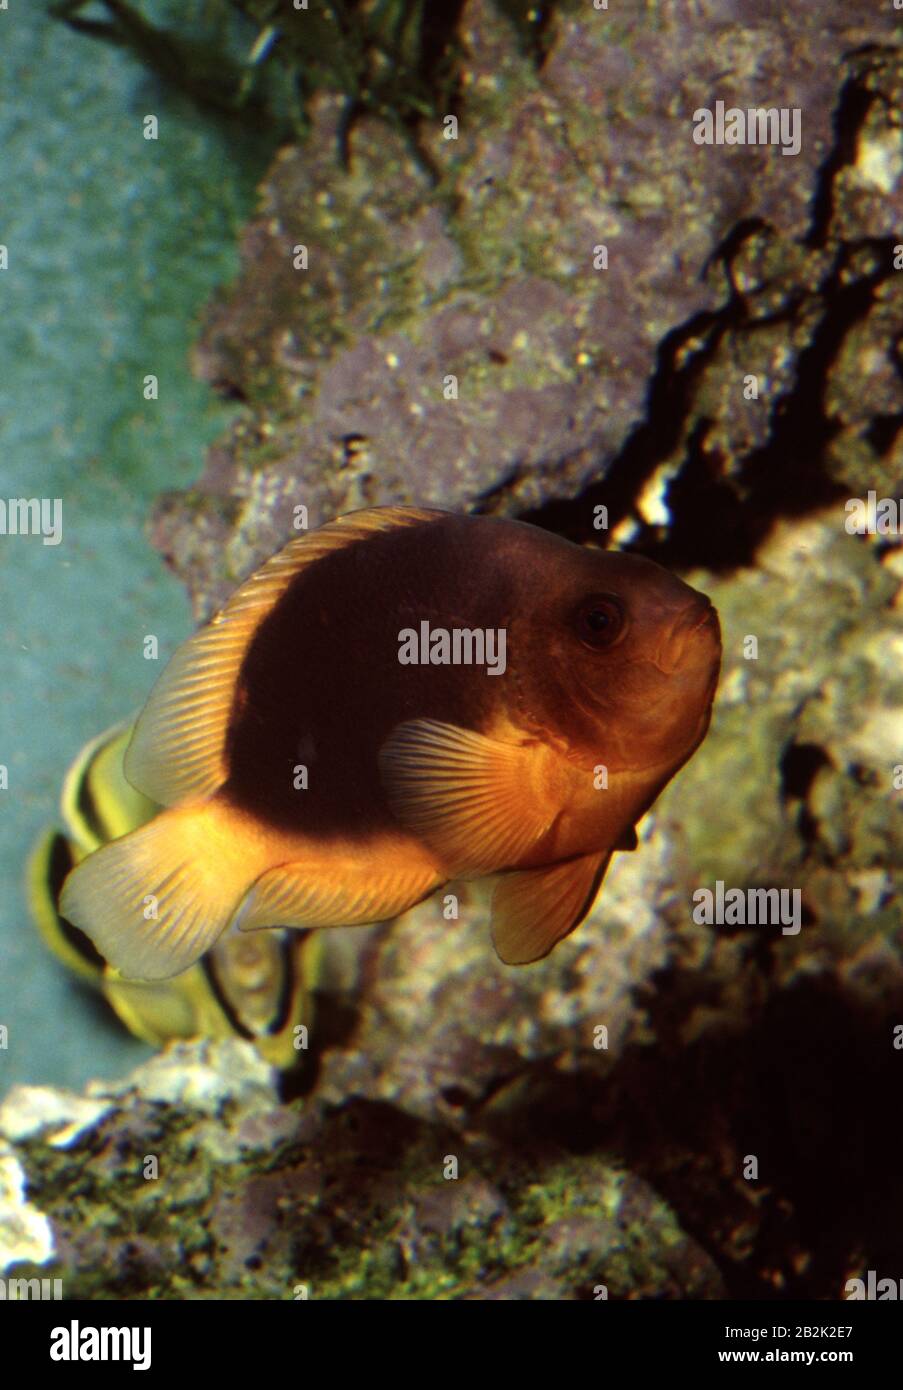 Red saddleback anemonefish, Amphiprion ephippium Stock Photo